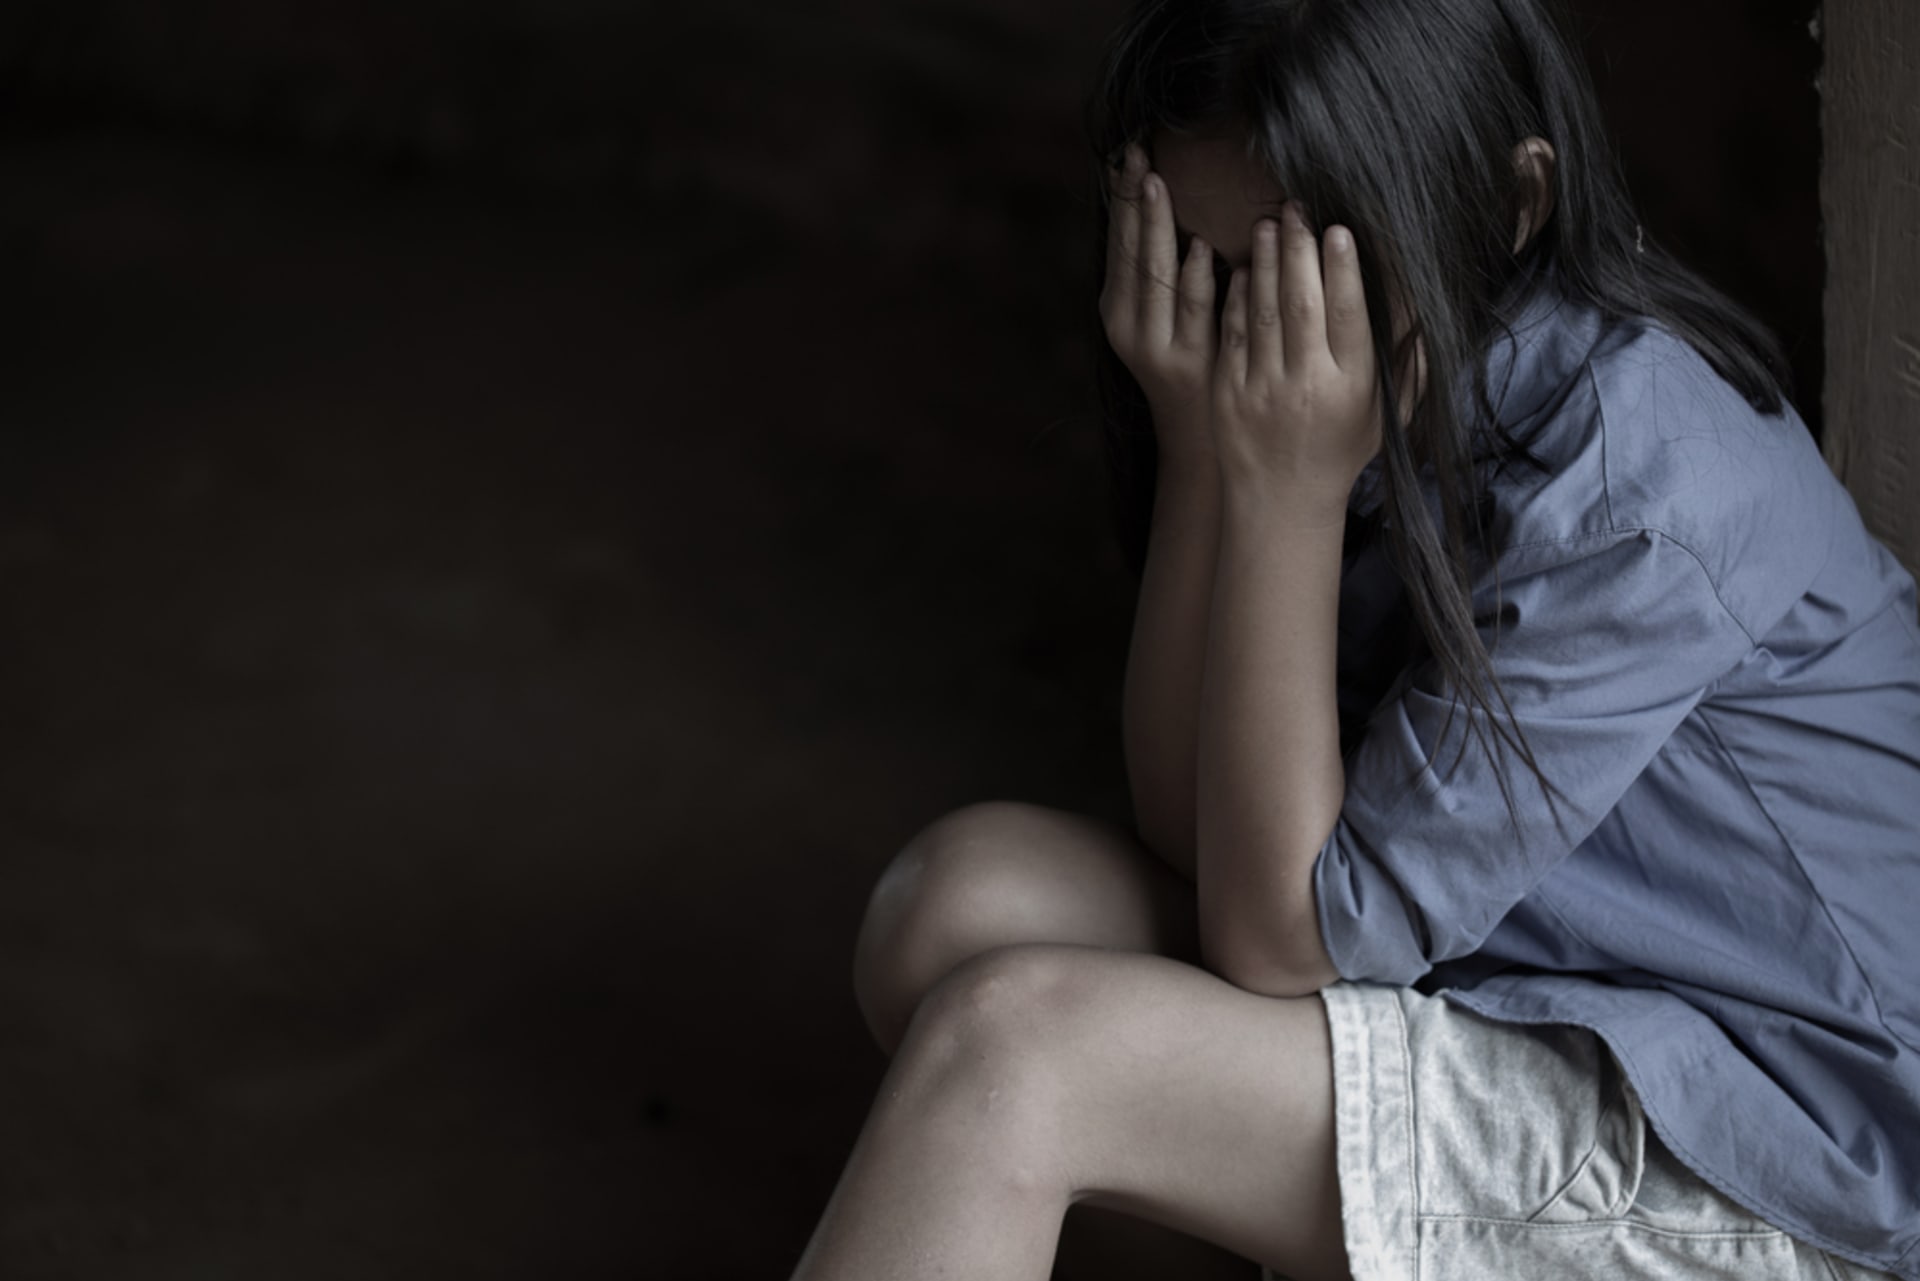 Čtveřice migrantů dostala za znásilnění 14leté dívky dvouleté tresty (ilustrační foto).